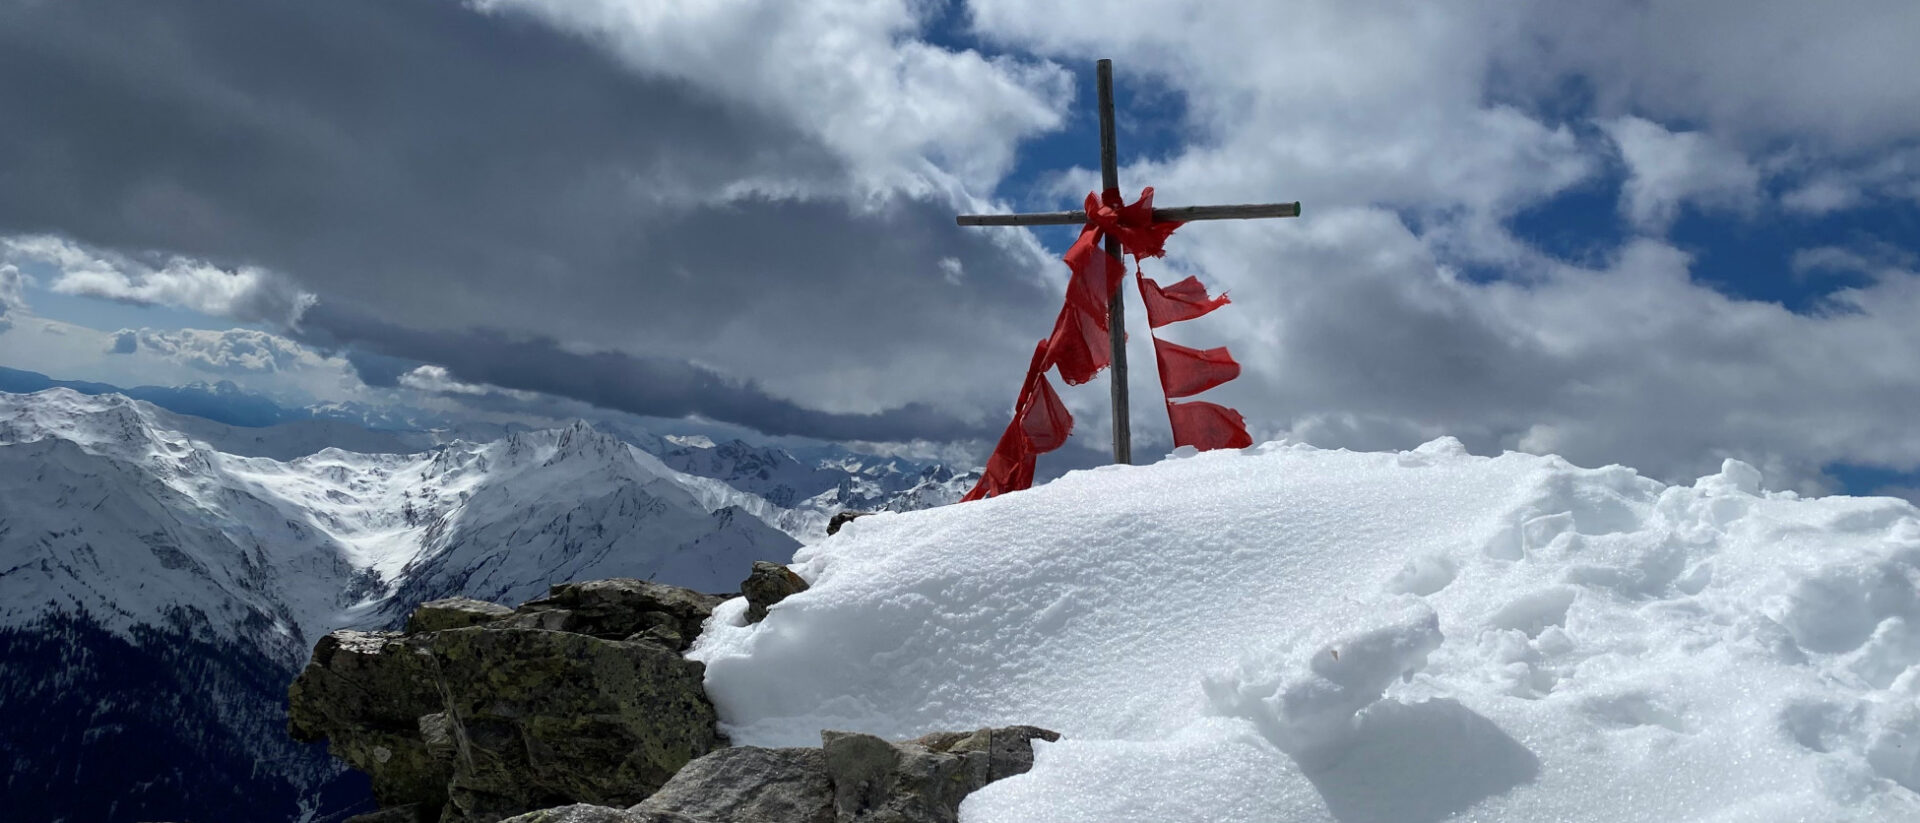 Südtirol meets Tibet: Gipfelkreuz und tibetische Gebetsfahnen in den Alpen.